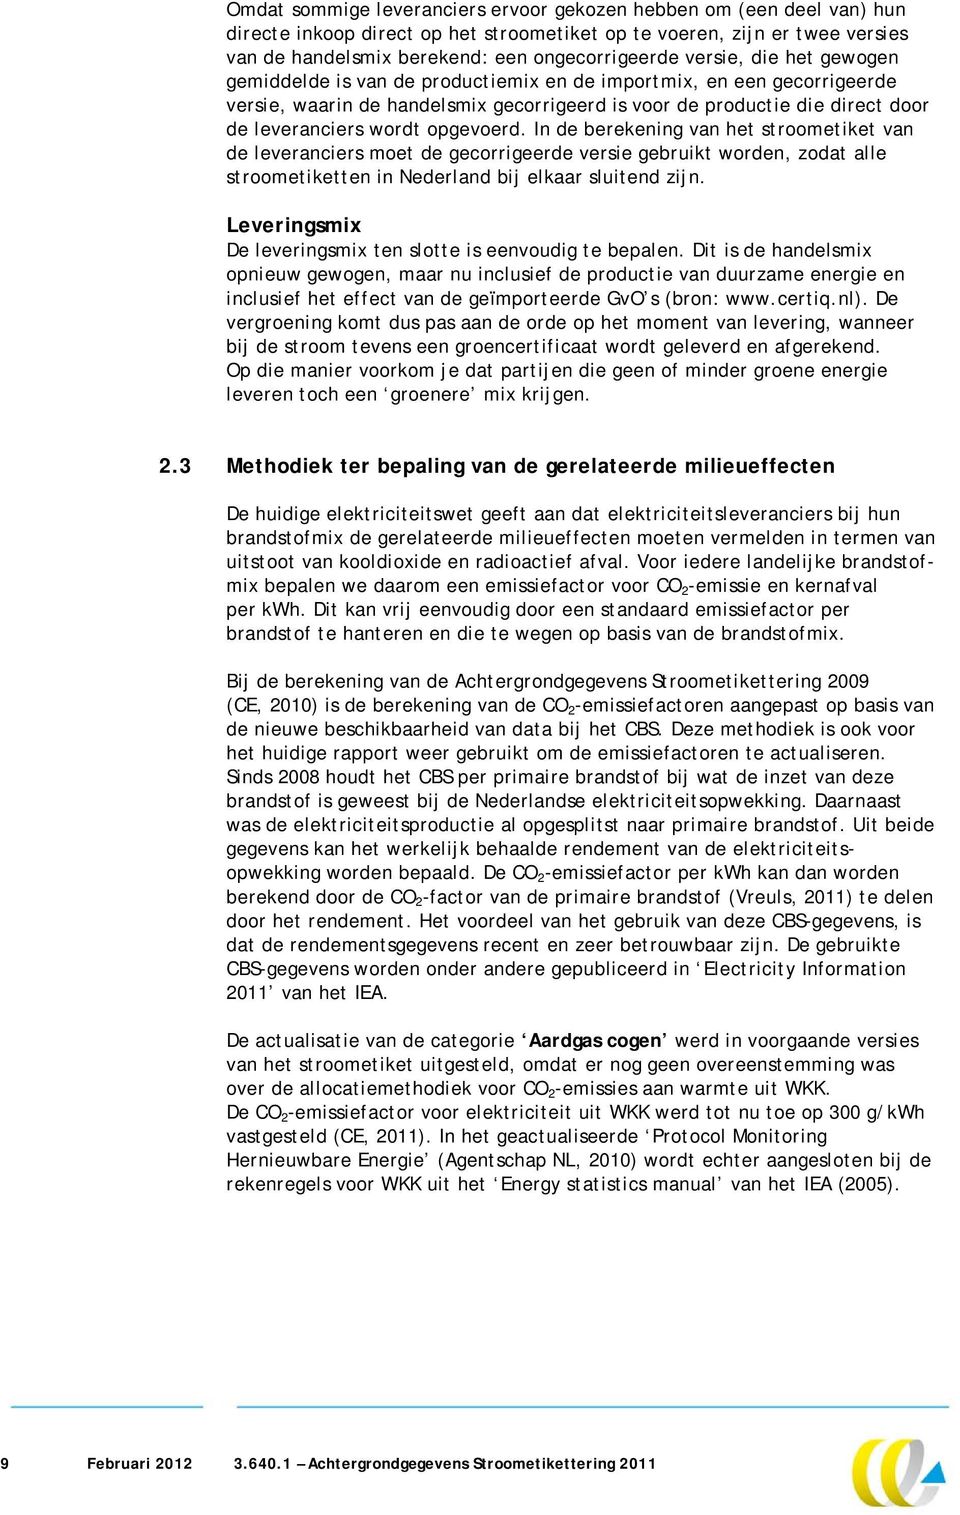 opgevoerd. In de berekening van het stroometiket van de leveranciers moet de gecorrigeerde versie gebruikt worden, zodat alle stroometiketten in Nederland bij elkaar sluitend zijn.